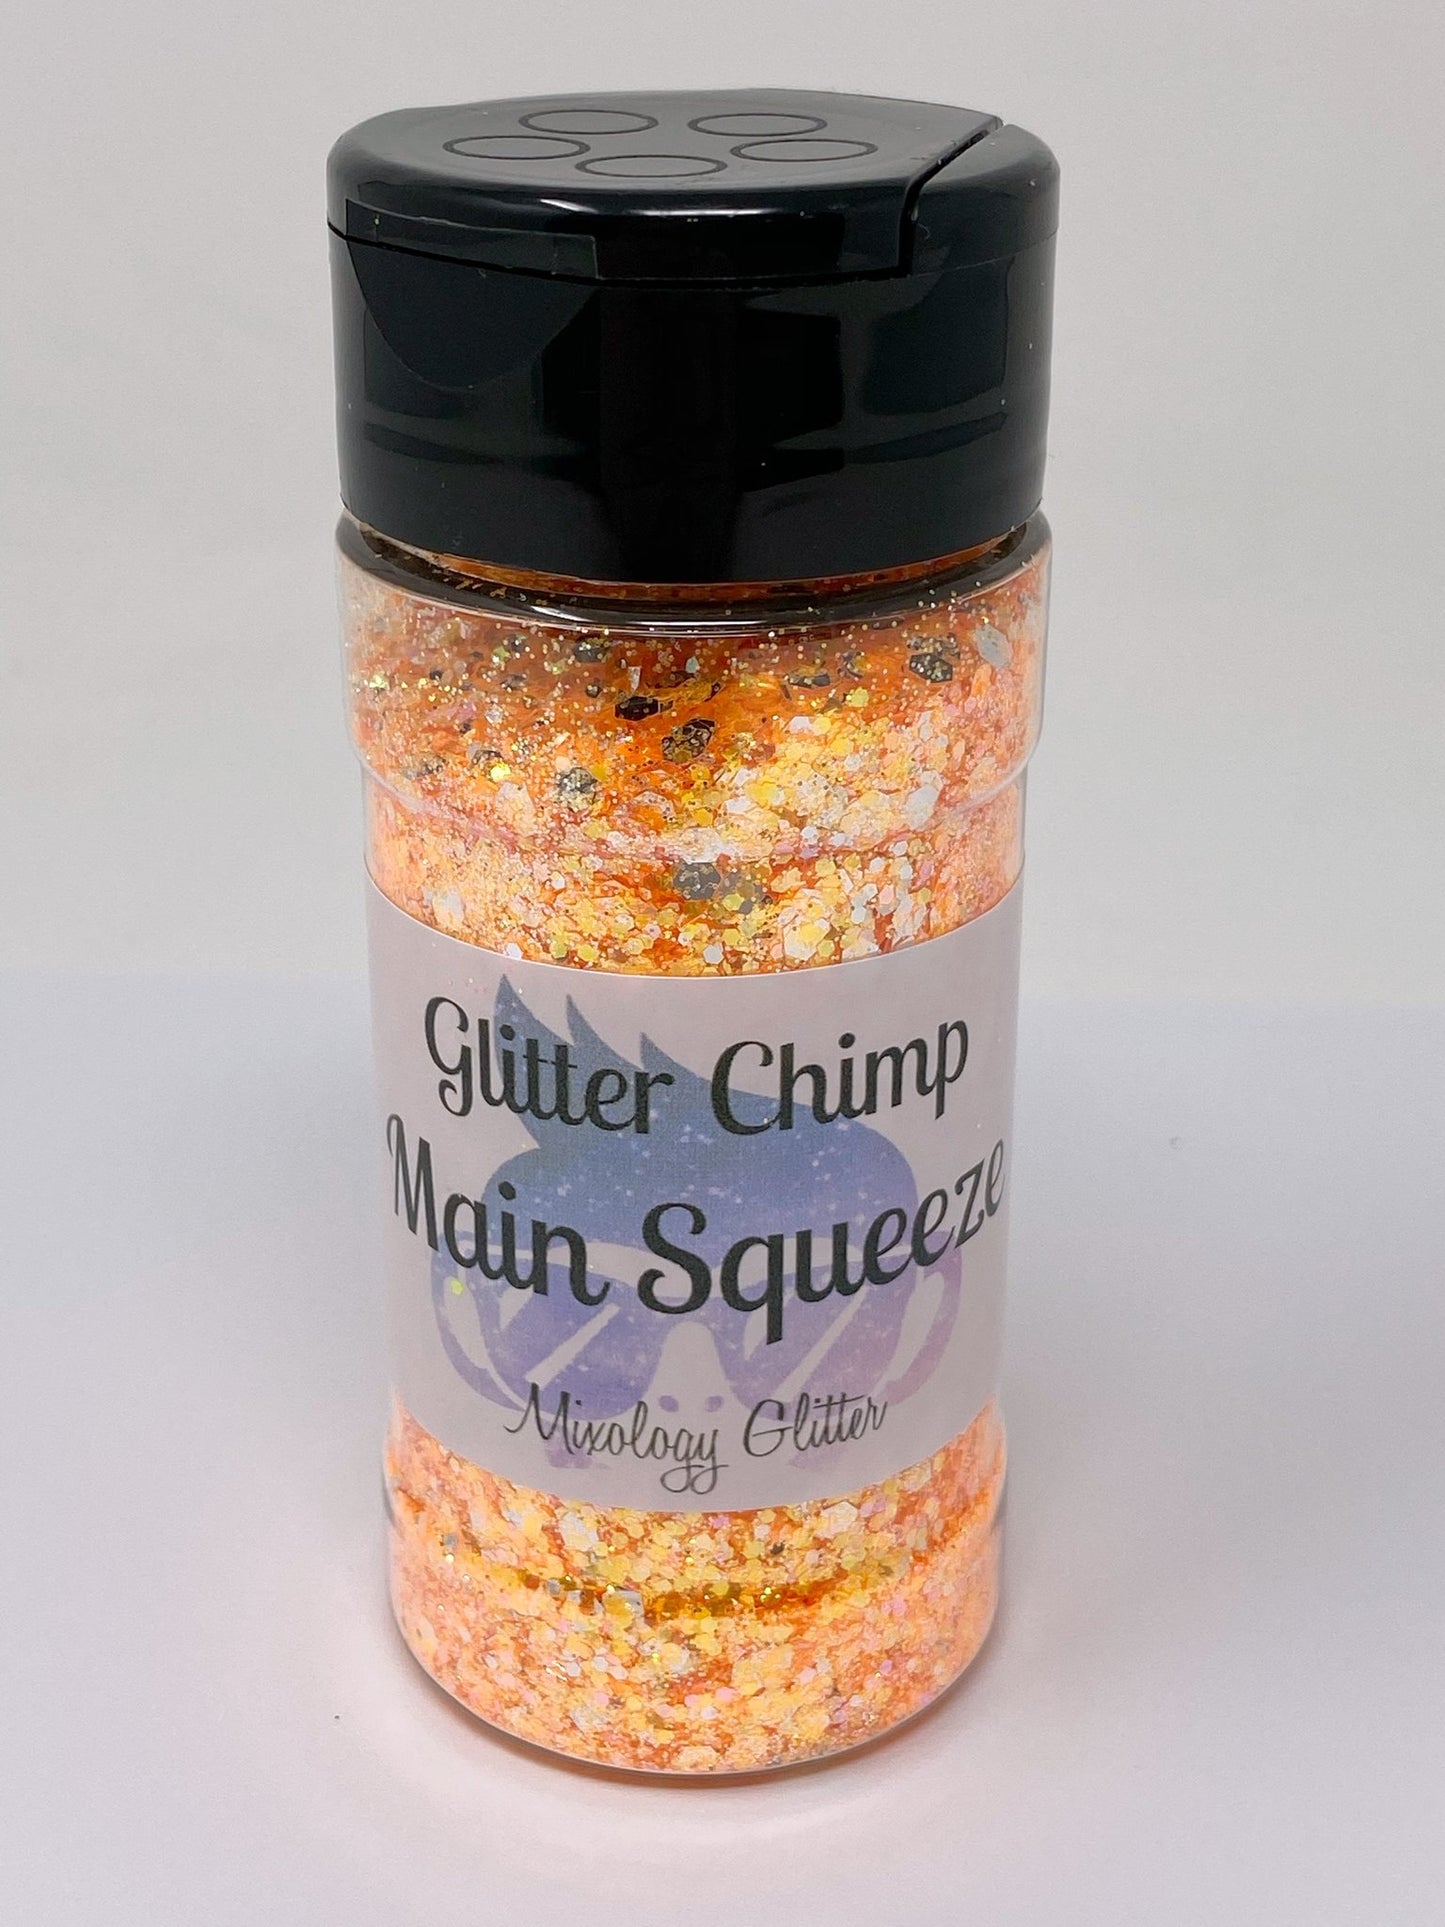 Main Squeeze Mixology Glitter